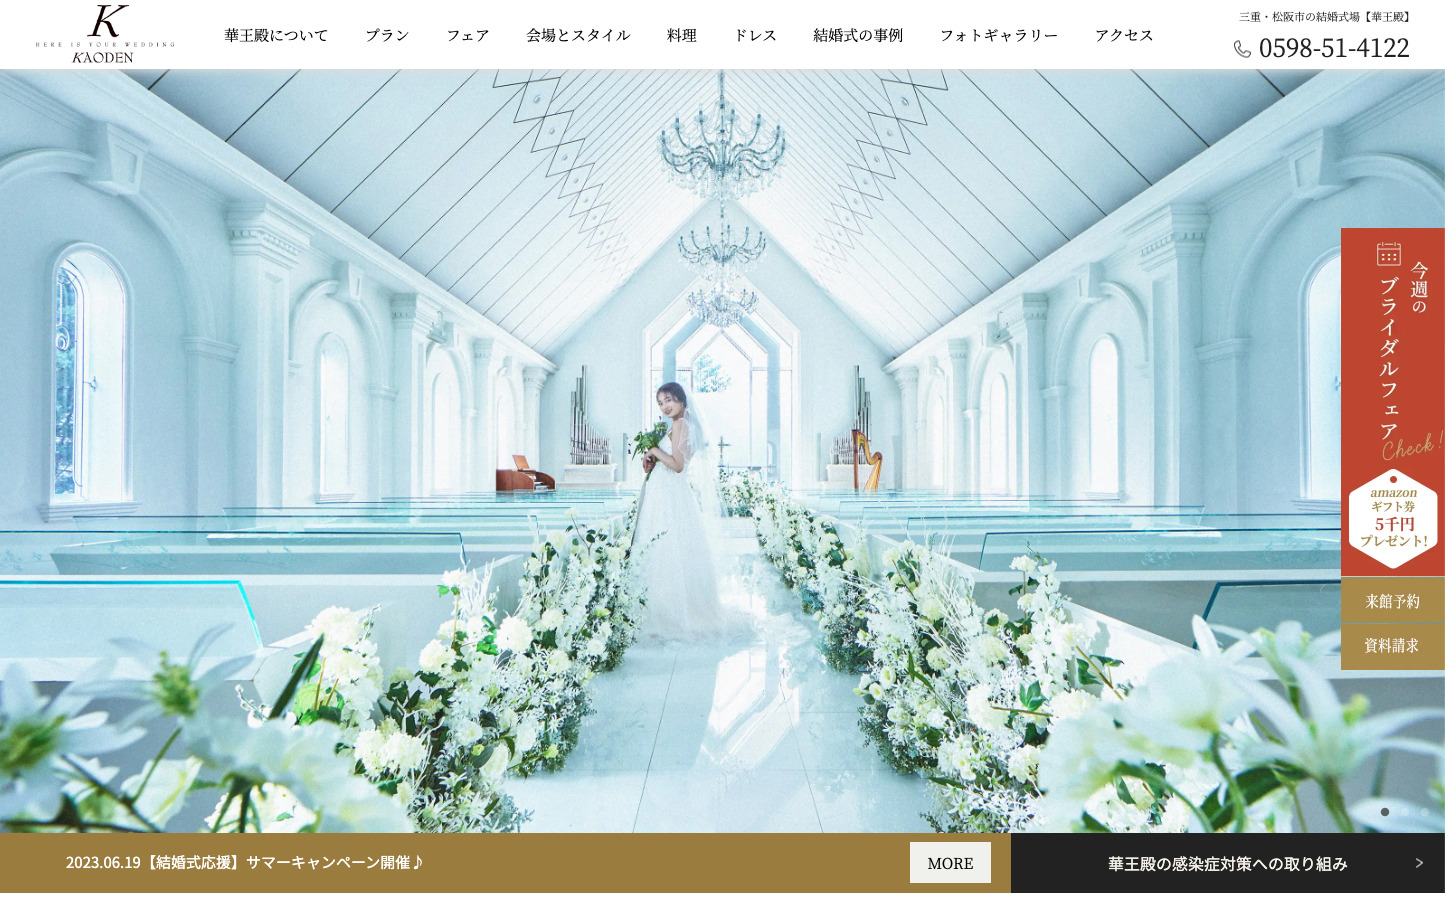 華王殿様ホームページ制作（結婚式場）のサムネイル